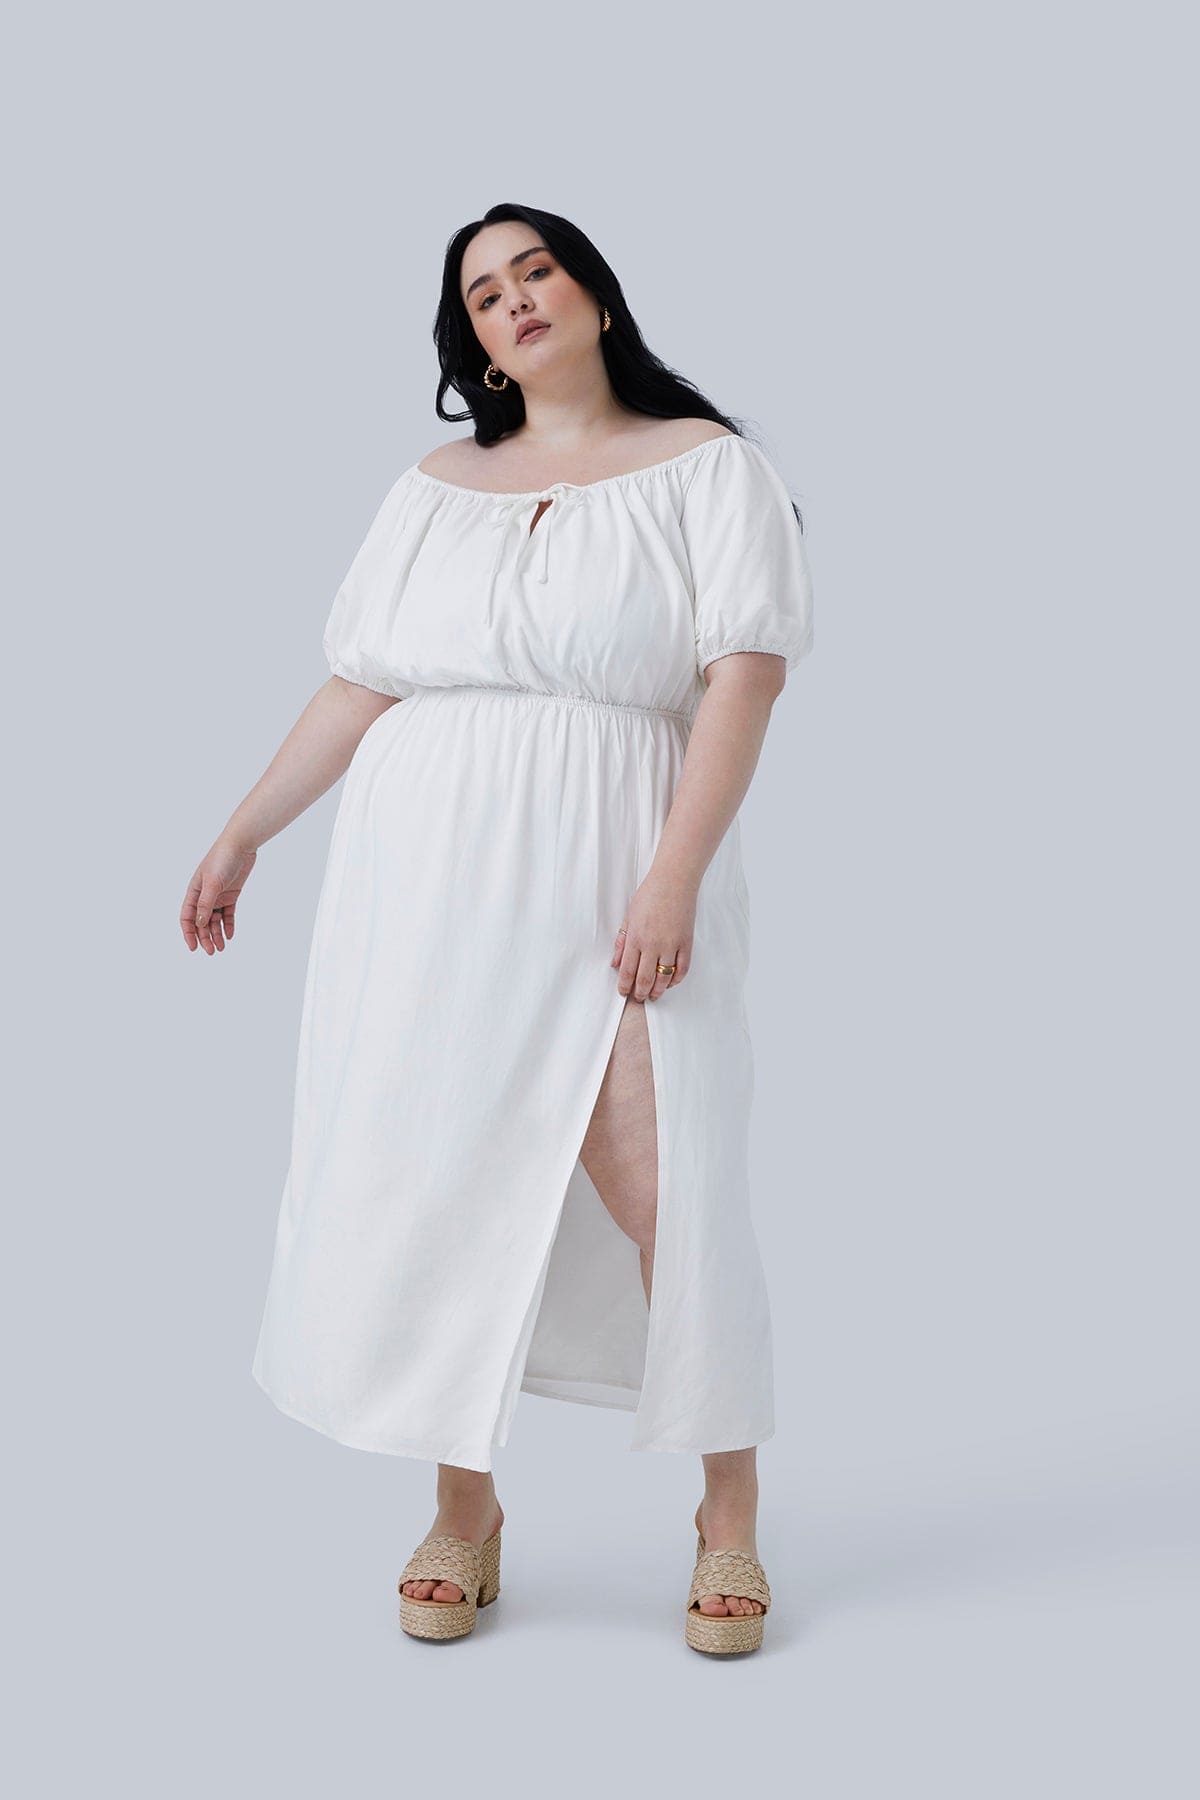 Kyst Menda City Vi ses i morgen Gia Midi Dress White - Gia IRL Plus Size Boutique – GIA/irl